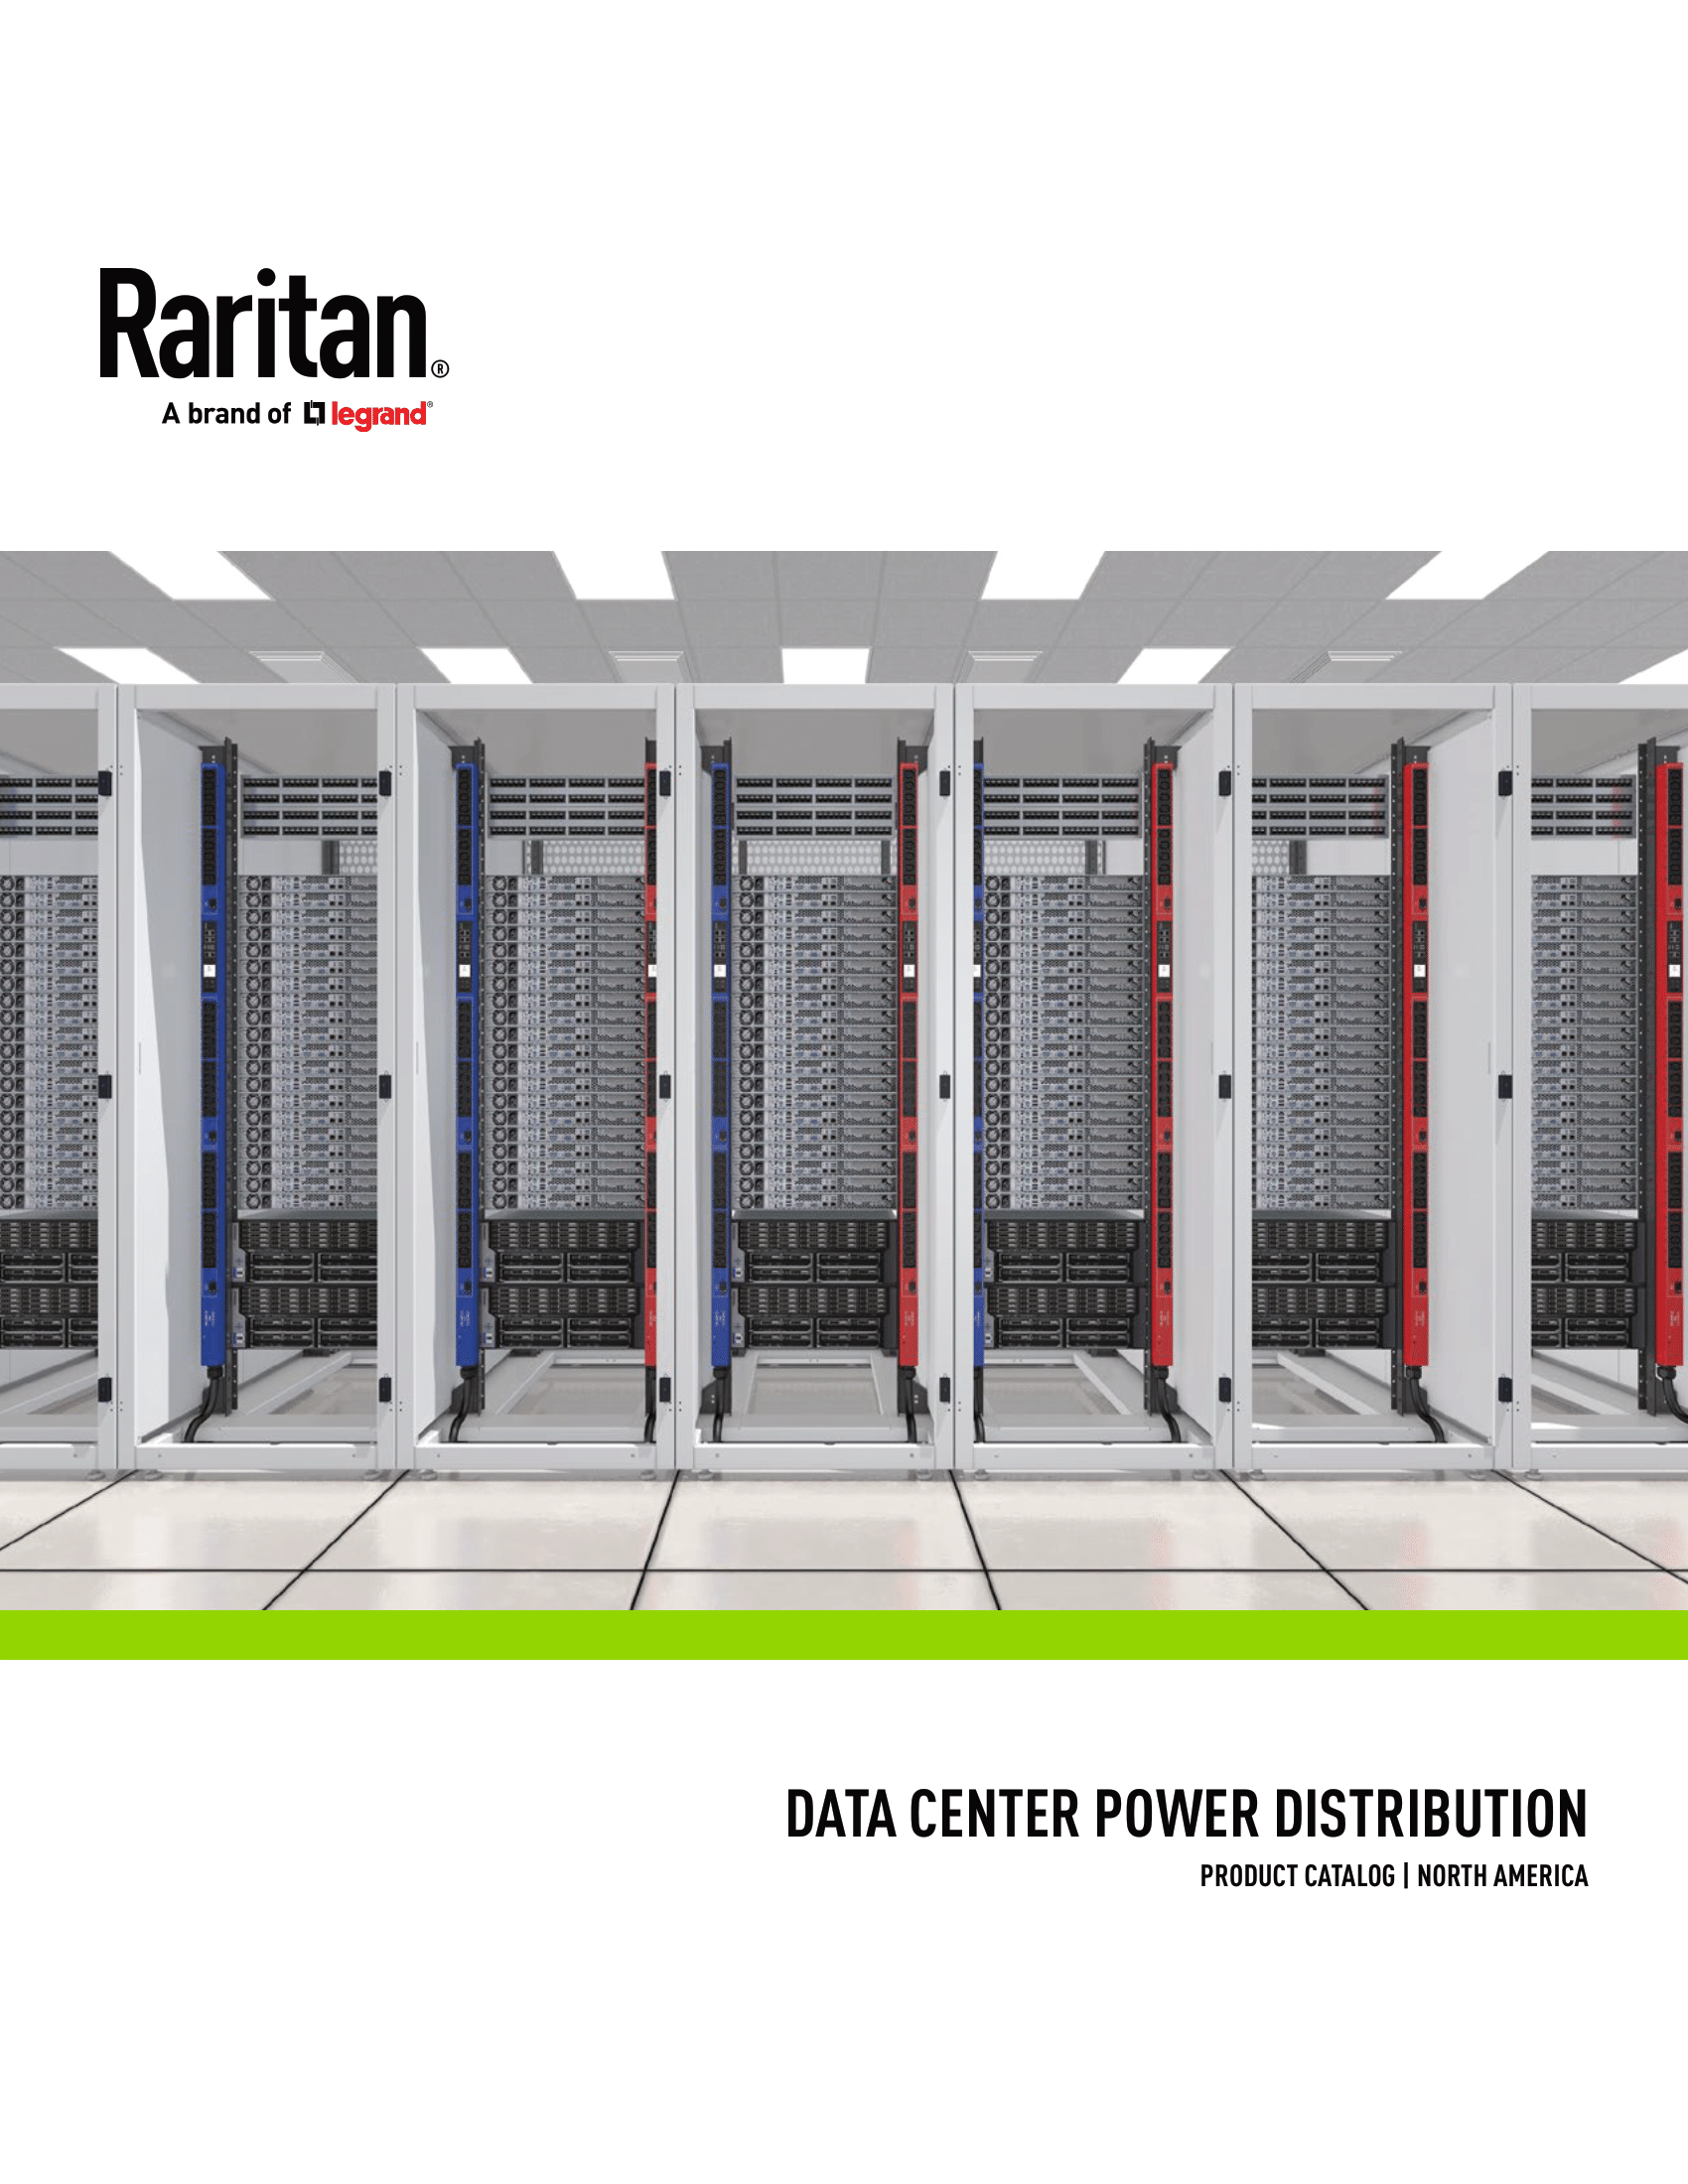 raritan_datacenter_power_distribution.png